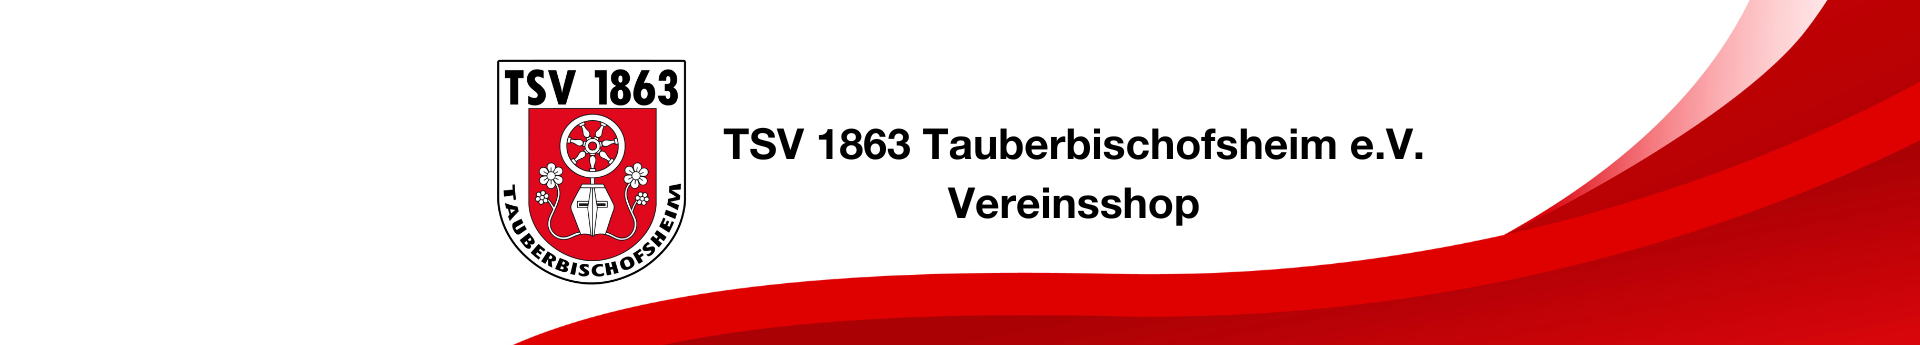 TSV Tauberbischofsheim Title Image